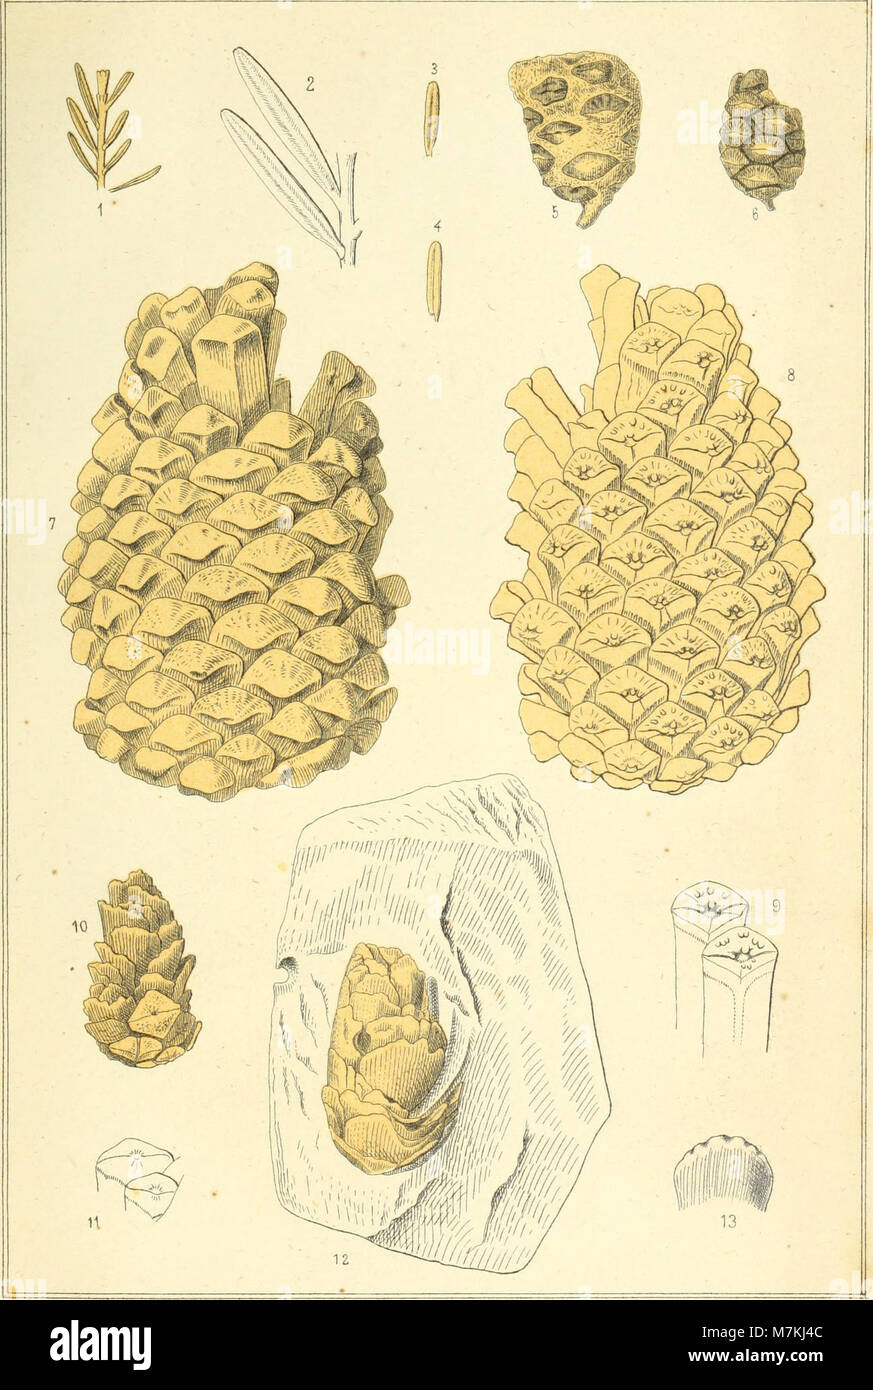 Atti della Società Italiana di Scienze naturali (1872) (20162015579) Foto de stock